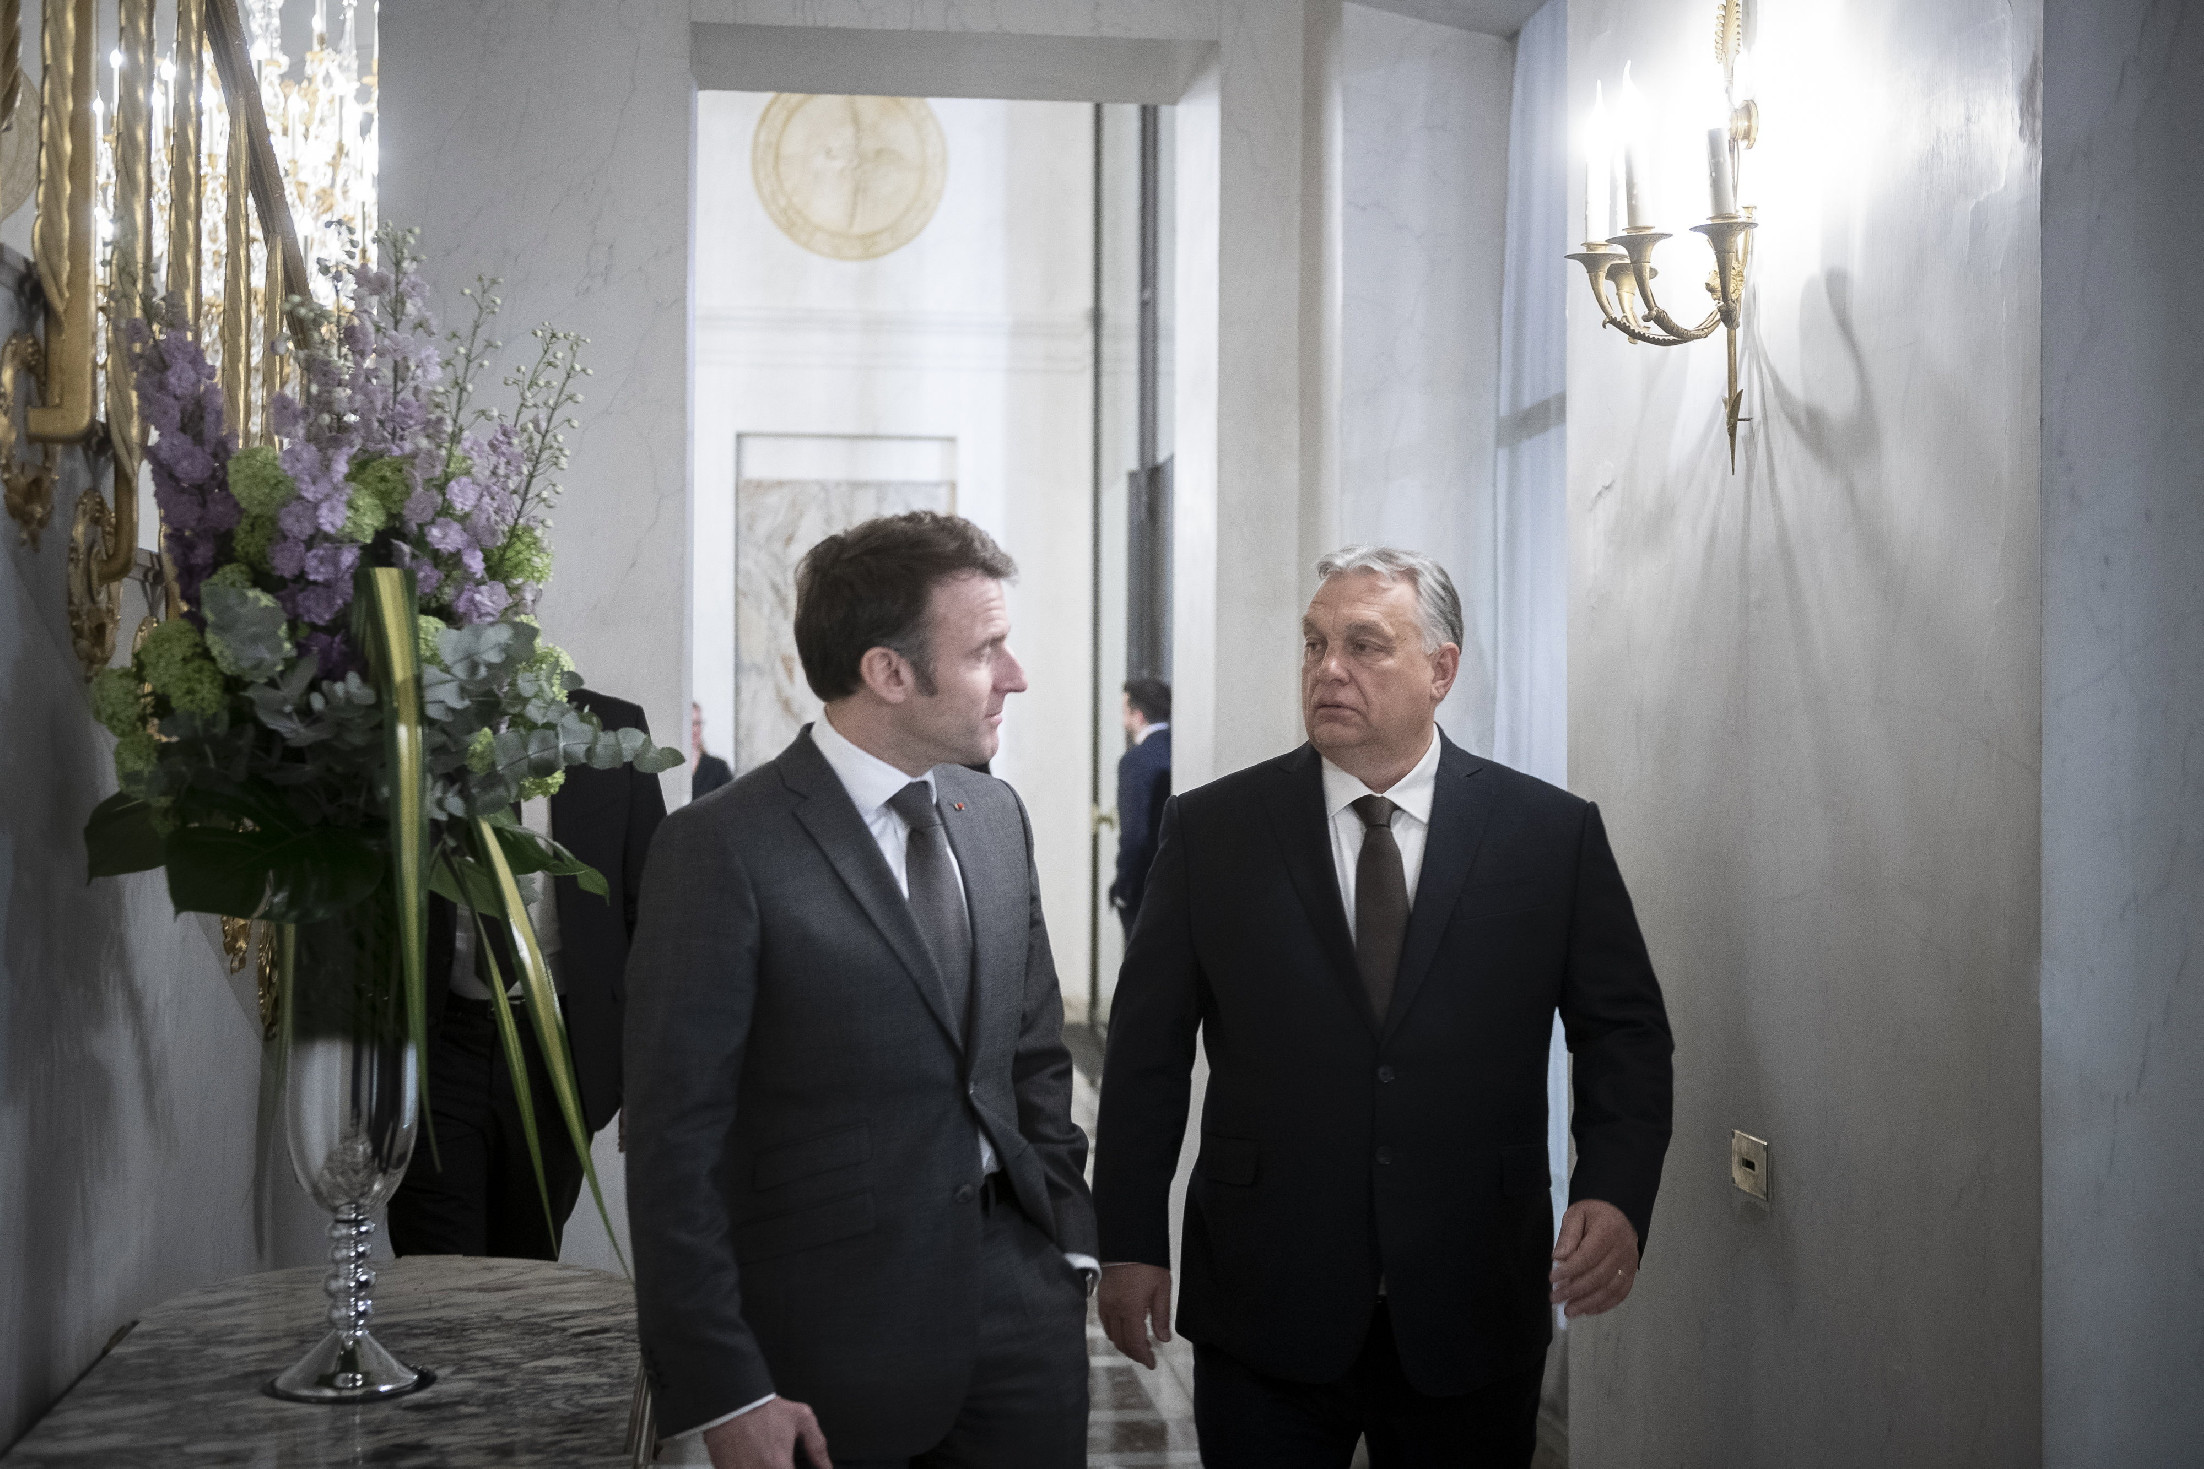 Az európai egységet hangsúlyozta Macron az Orbánnal folytatott találkozón